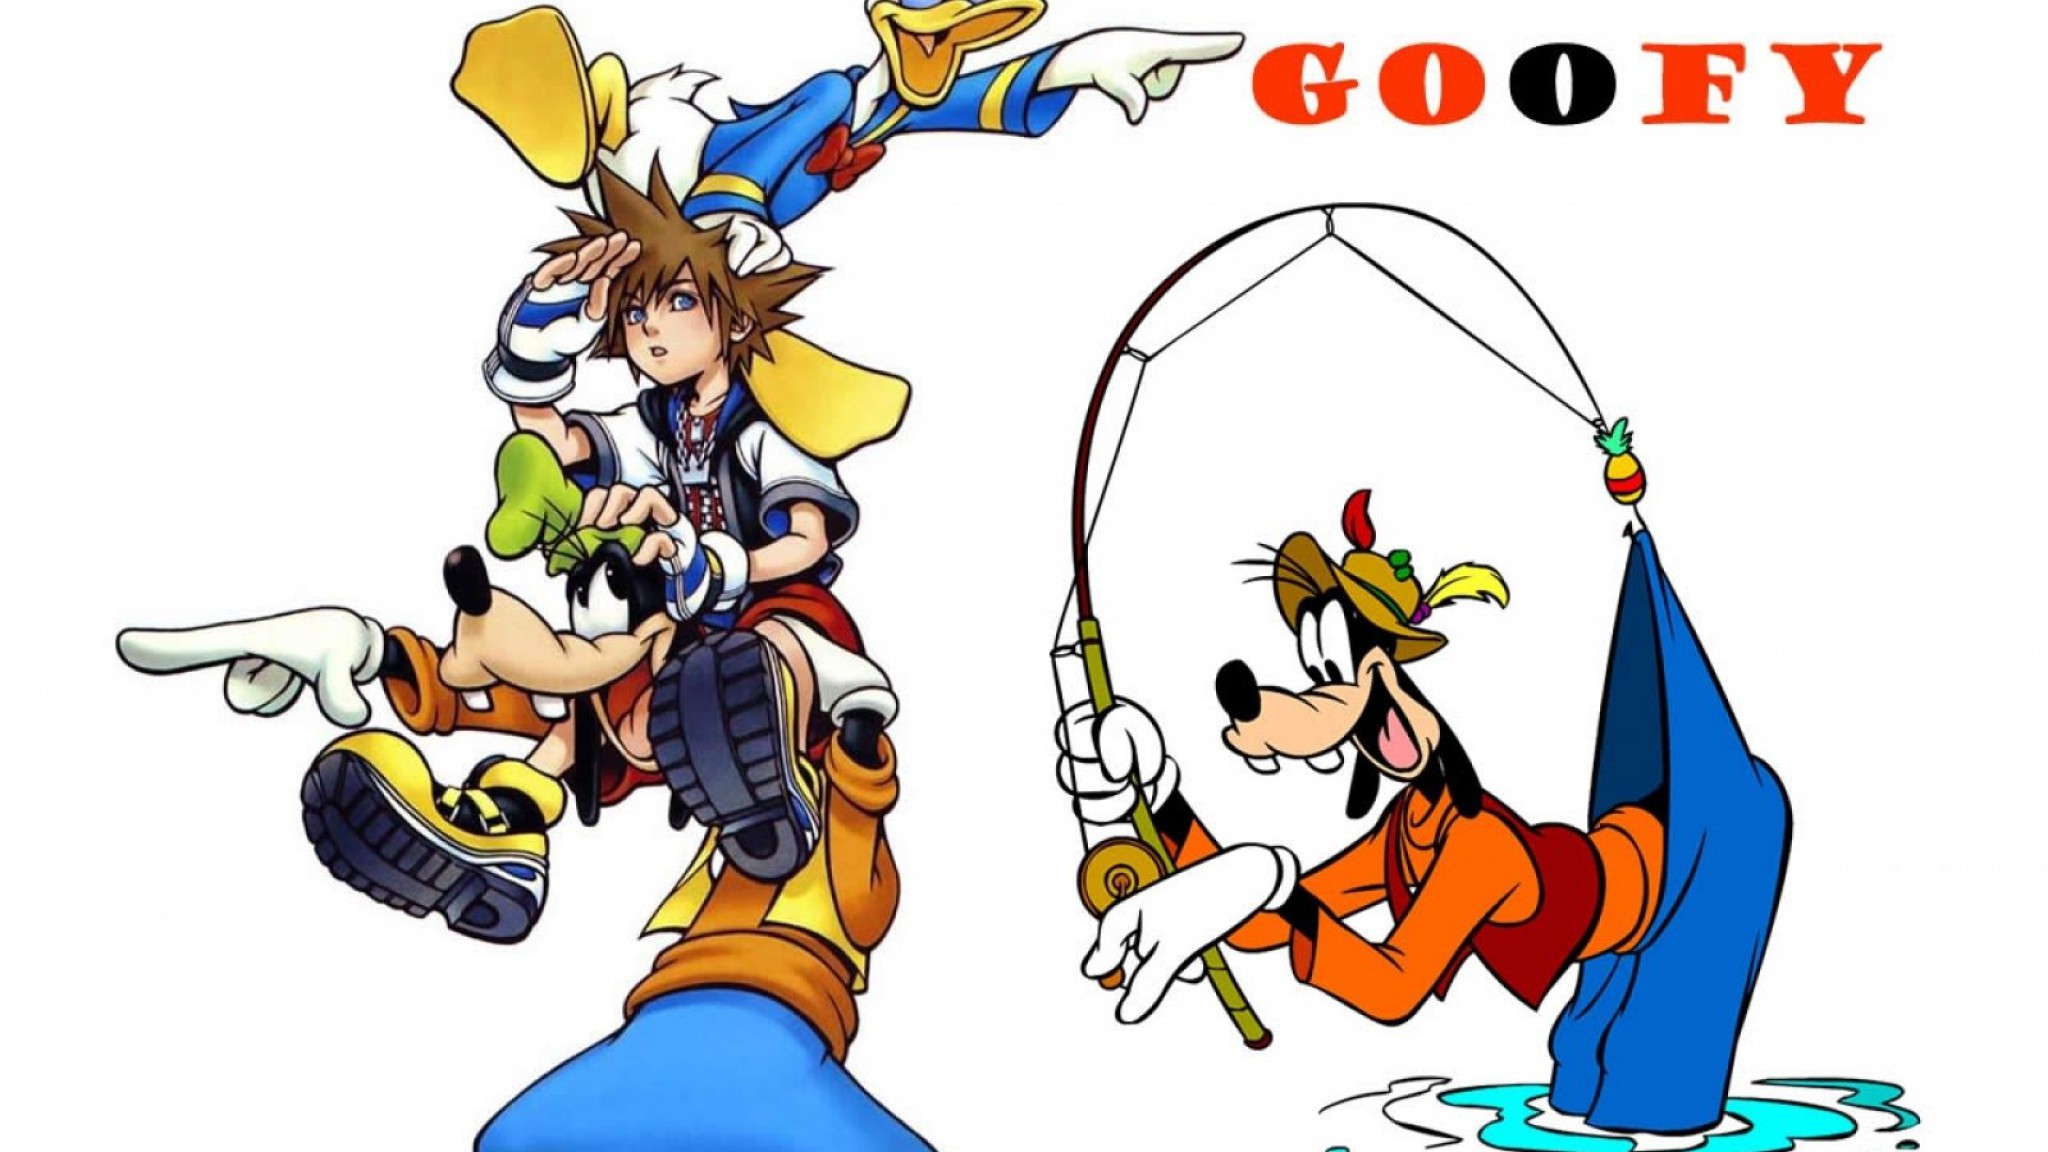 Goofy Disney Family Animation Fantasy 1goofy Comedy - Kingdom Hearts 1 Png - HD Wallpaper 